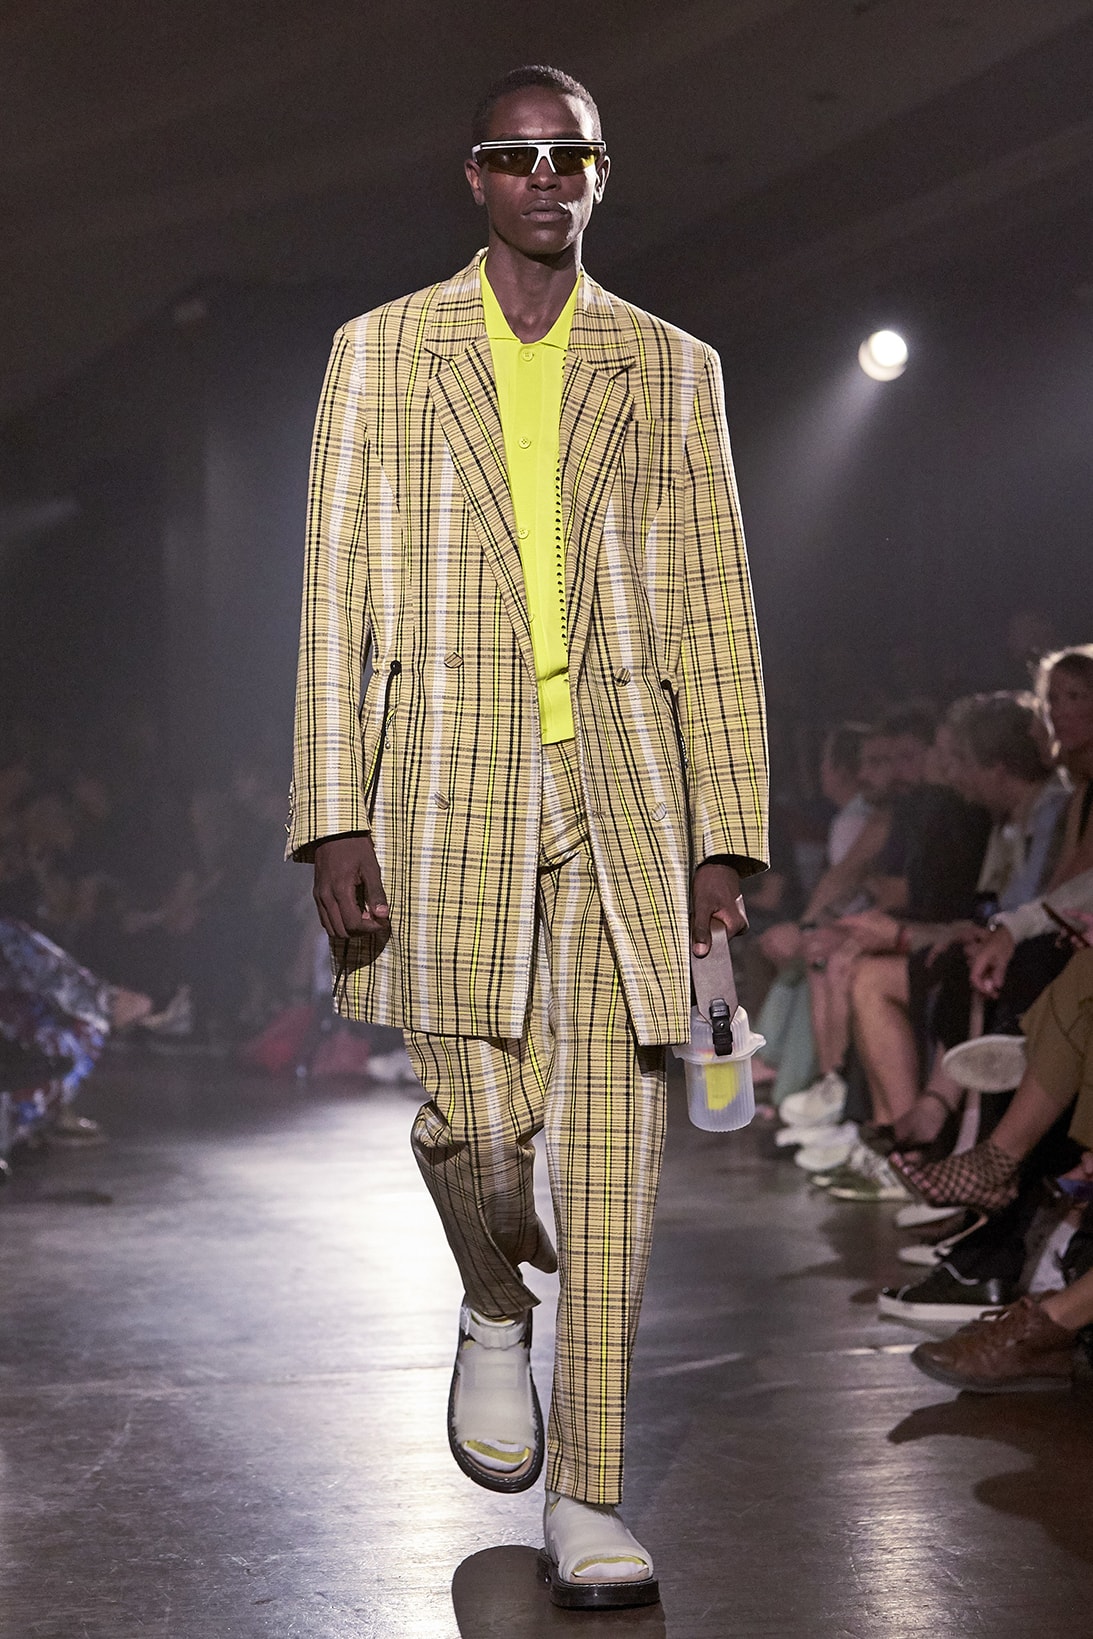 KENZO Spring Summer 2019 Collection runway show paris fashion week men humberto leon carol lim